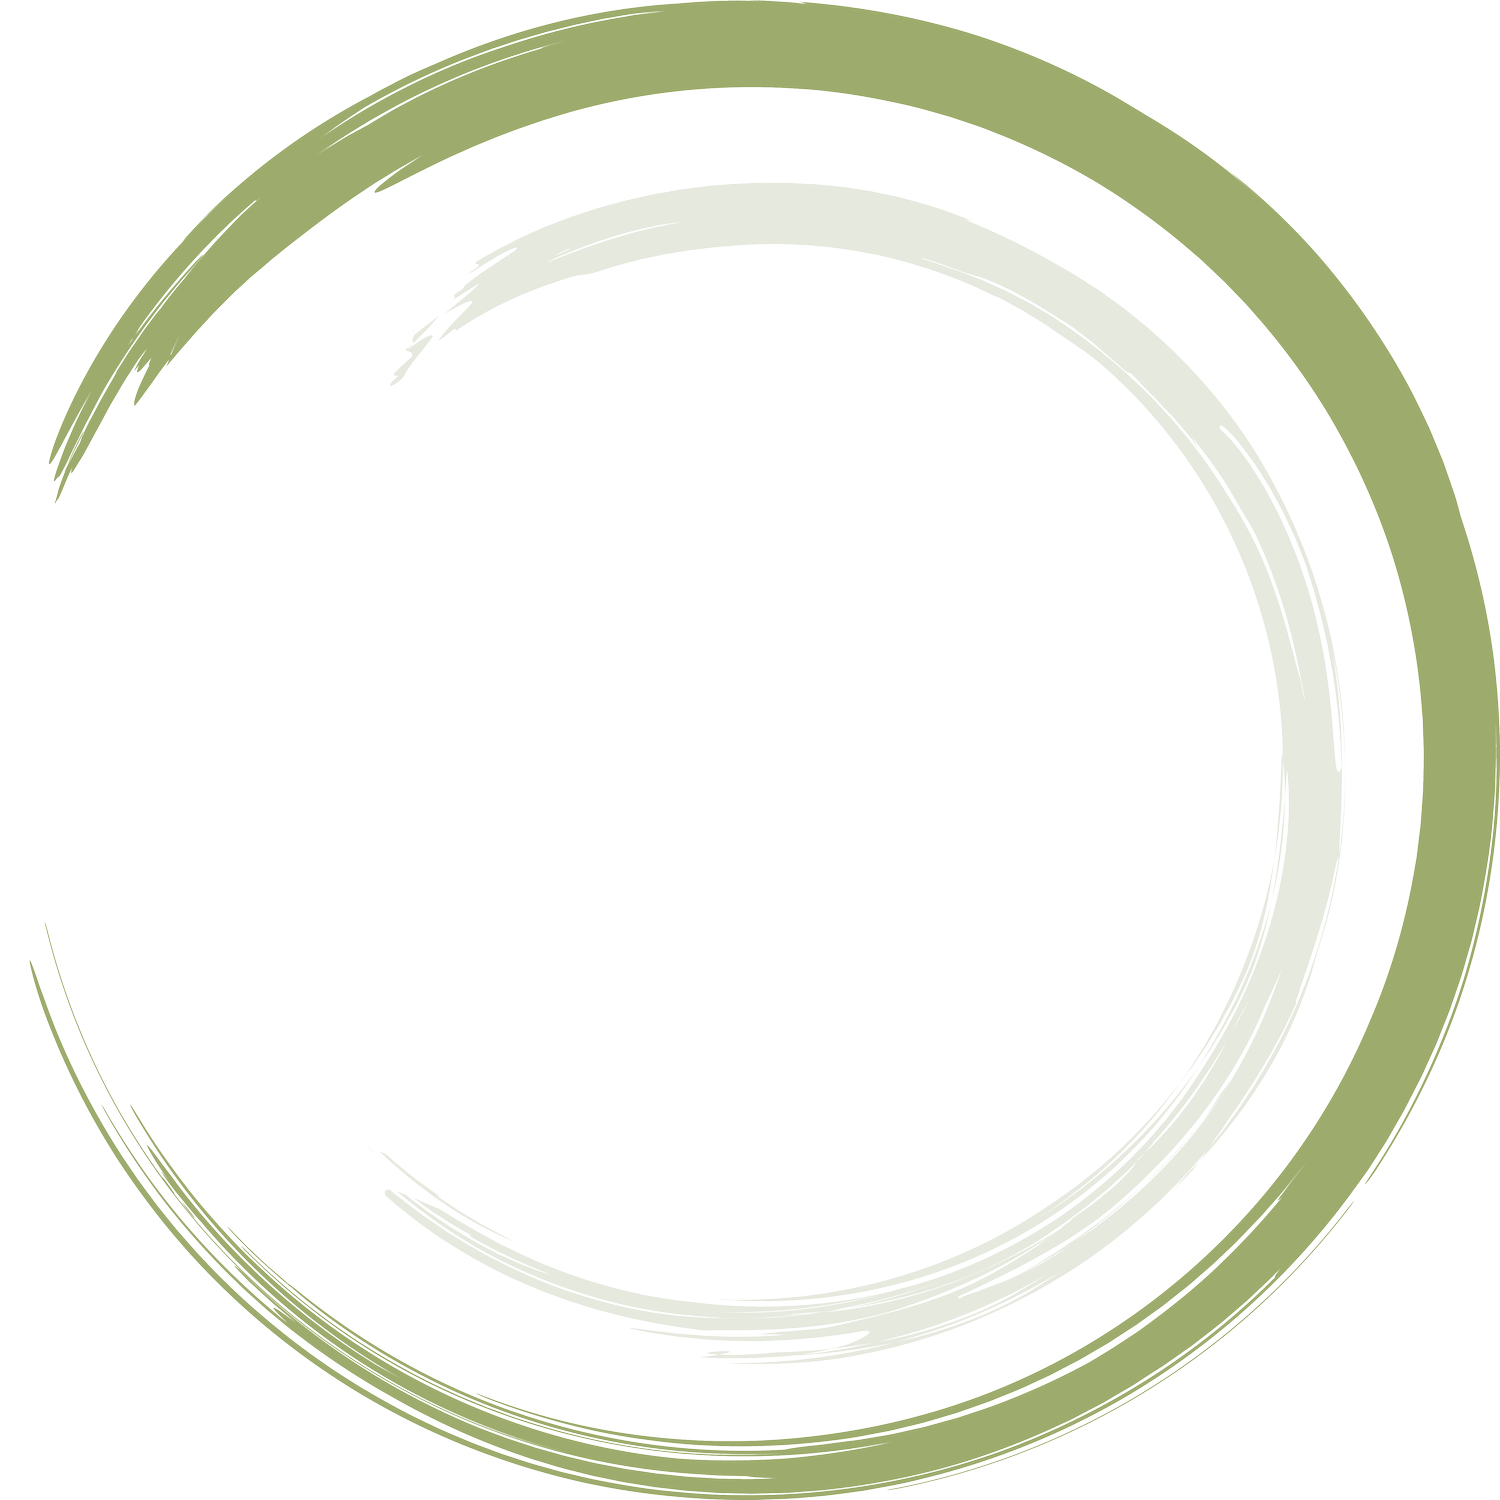 Spinweber Strategies